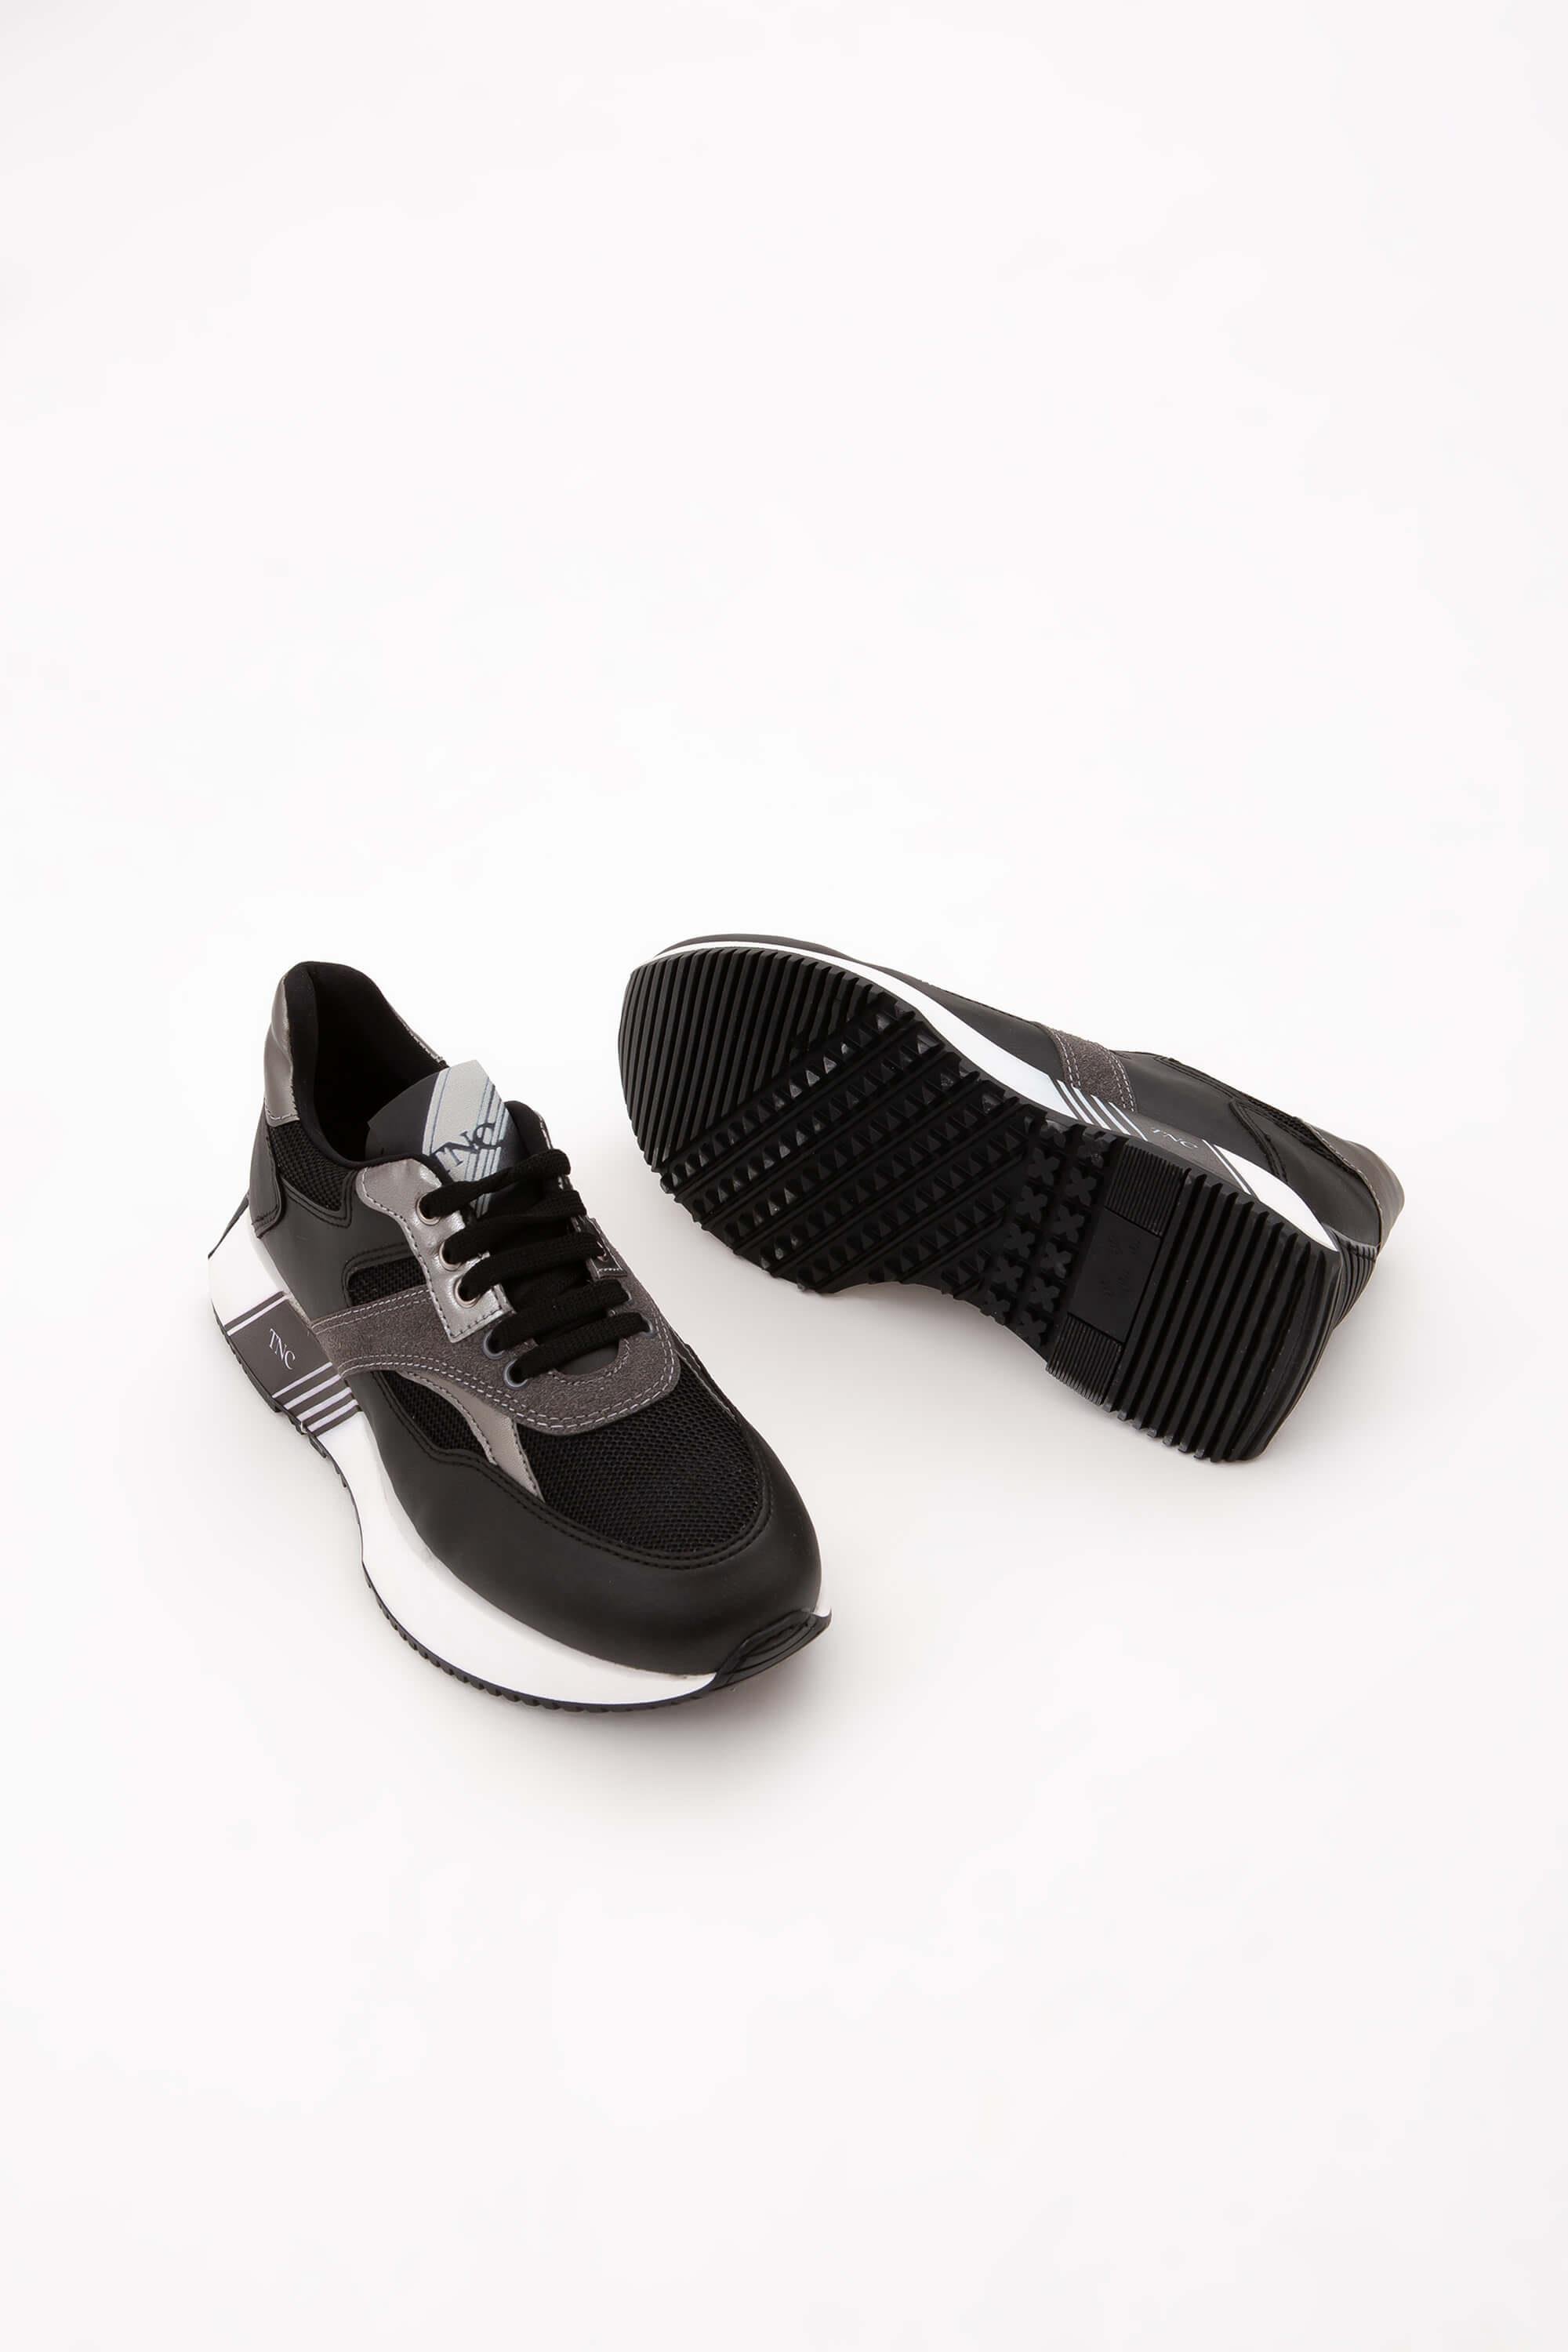 Tamer Tanca Kadın Vegan Siyah Sneakers & Spor Ayakkabı